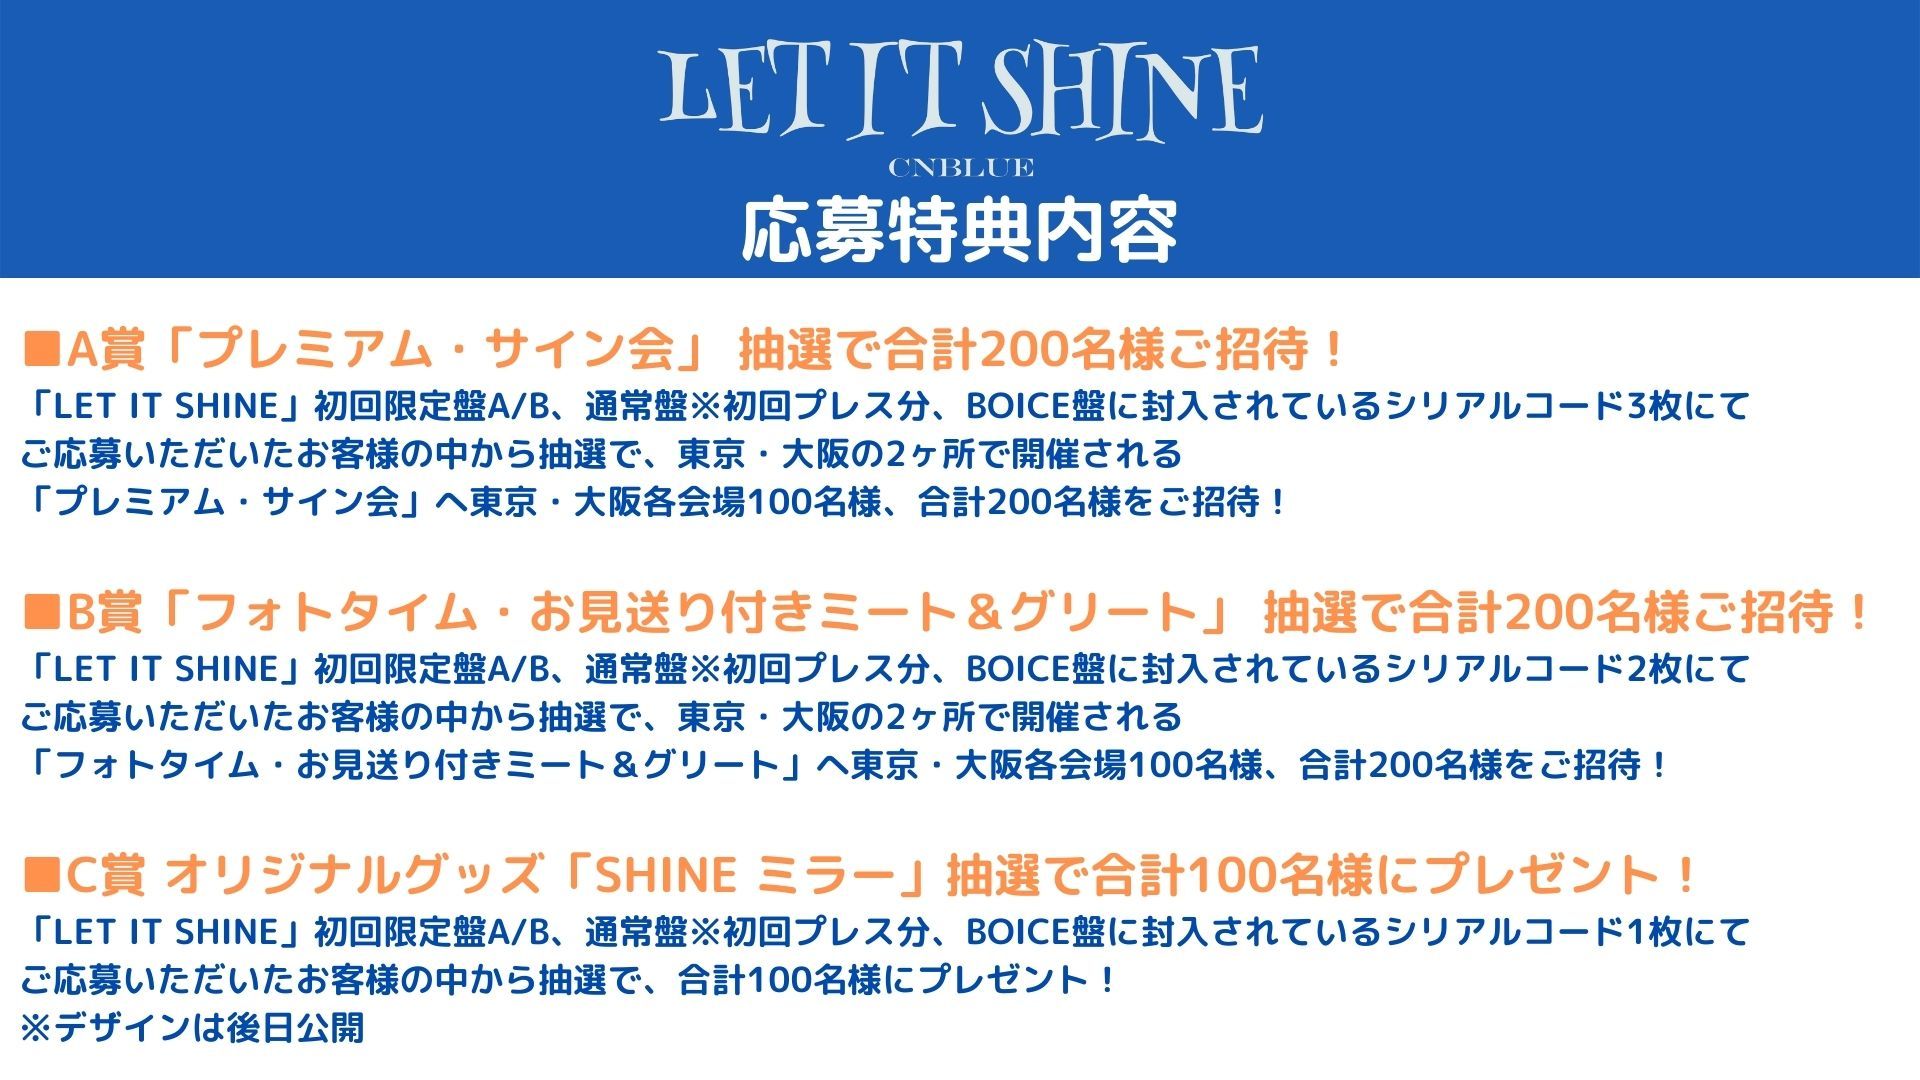 ニューシングル「LET IT SHINE」豪華購入者応募特典会の詳細が決定 